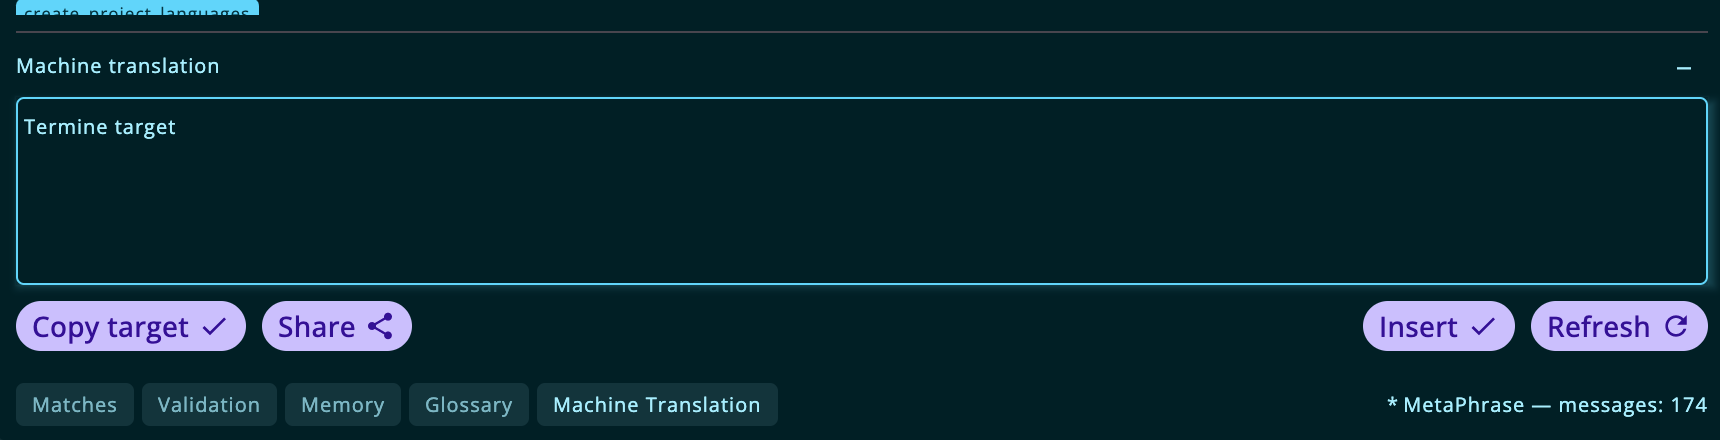 machine_translation